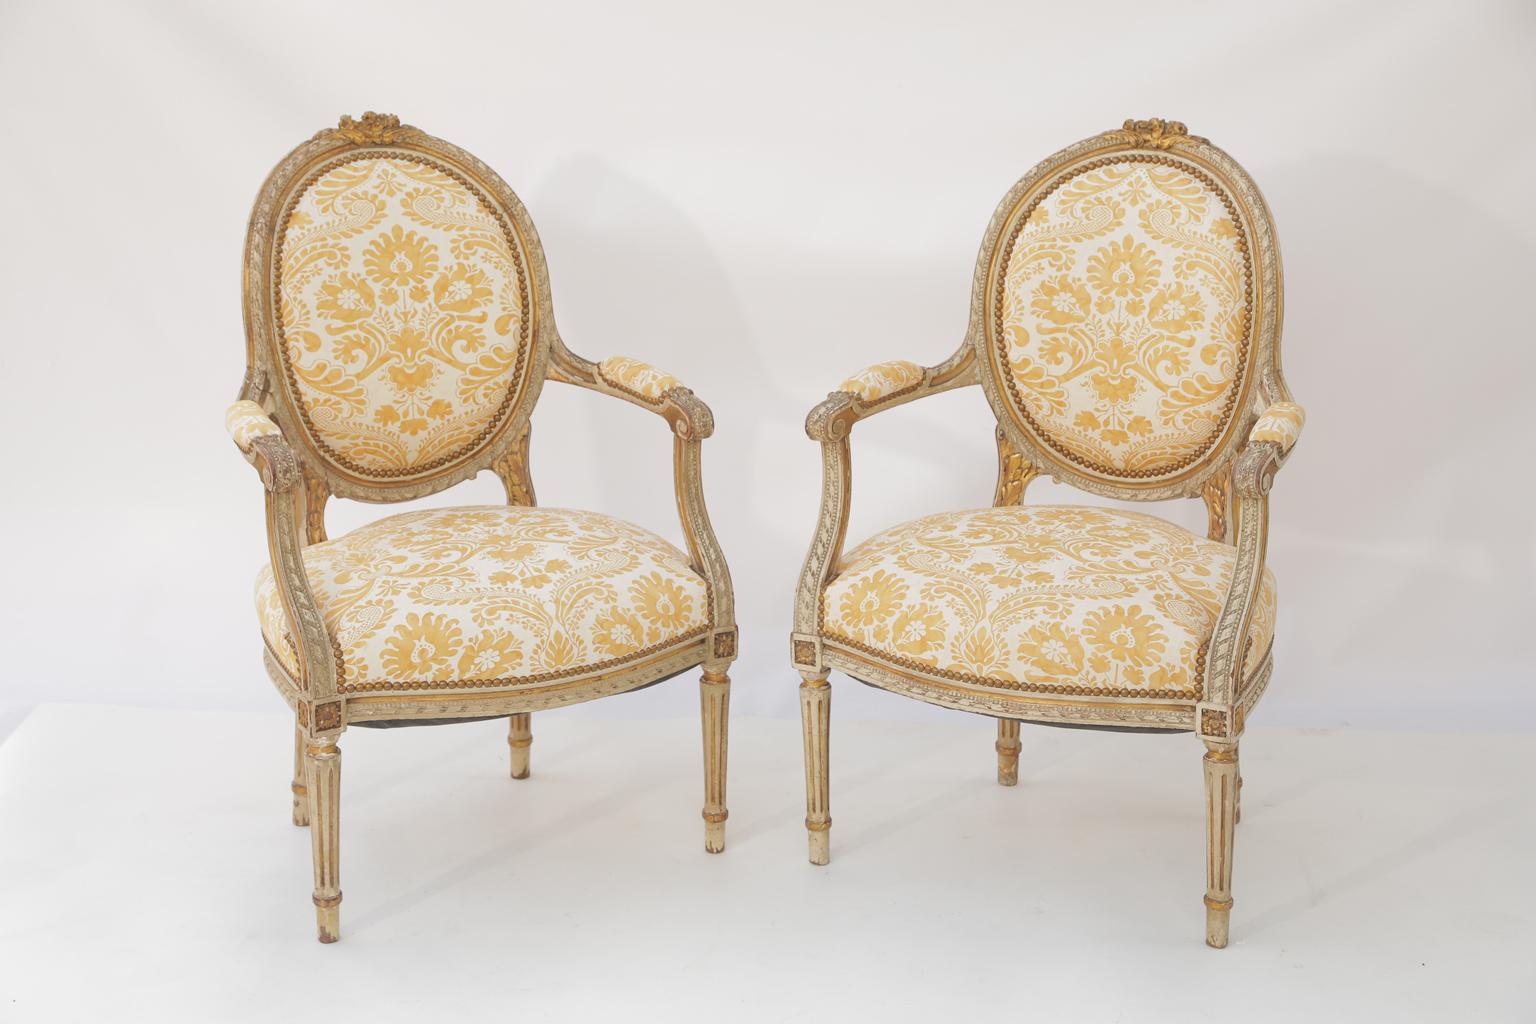 Paar Fauteuils im Louis XVI-Stil, bemalt und paketvergoldet, mit natürlichen Gebrauchsspuren, jede ovale gepolsterte Rückenlehne in einem gadronierten Rahmen, überragt von blattförmigen Schnitzereien, ausgebreitete Arme mit Ellbogenstützen, die in